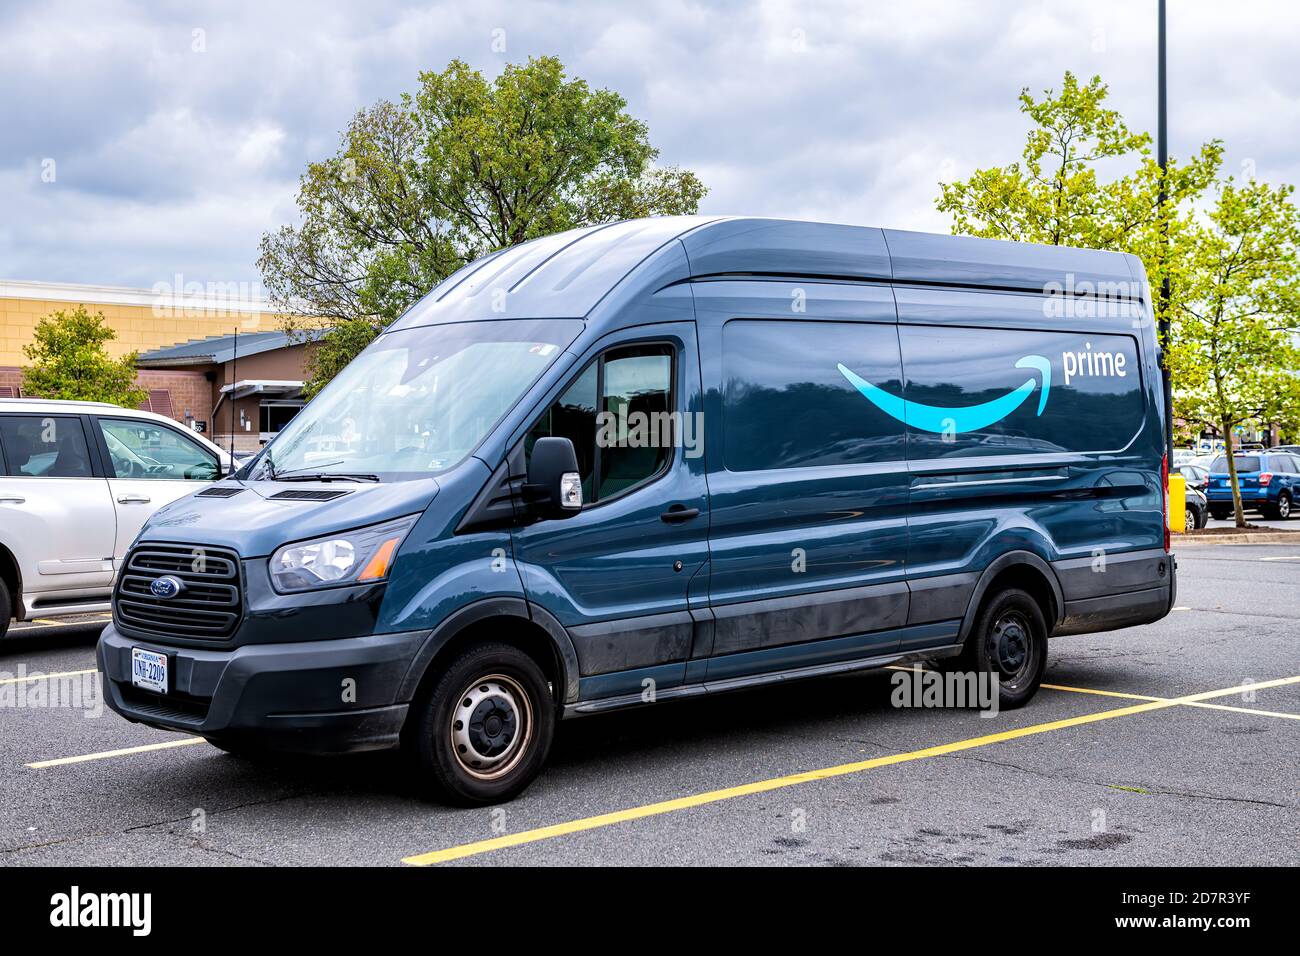 Sterling, USA - 12. September 2020: Amazon Lieferwagen Fahrzeug geparkt auf  dem Parkplatz des Walmart Einzelhandelsgeschäft mit Prime-Logo auf dem Auto  Stockfotografie - Alamy